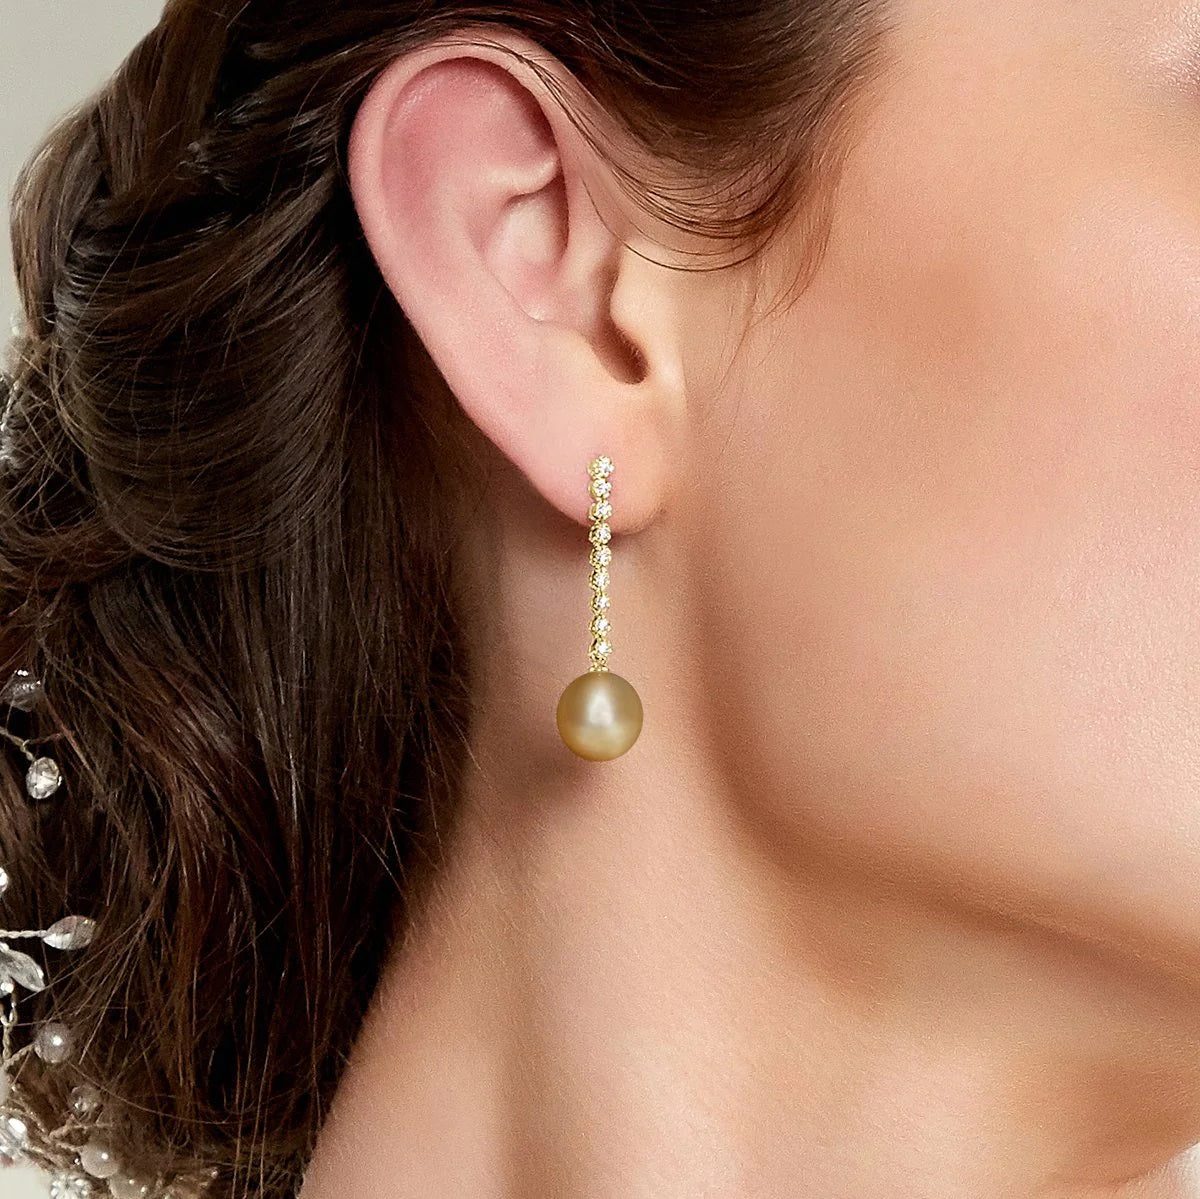 Best Pearl Earring Sizes to Wear 12-13mm